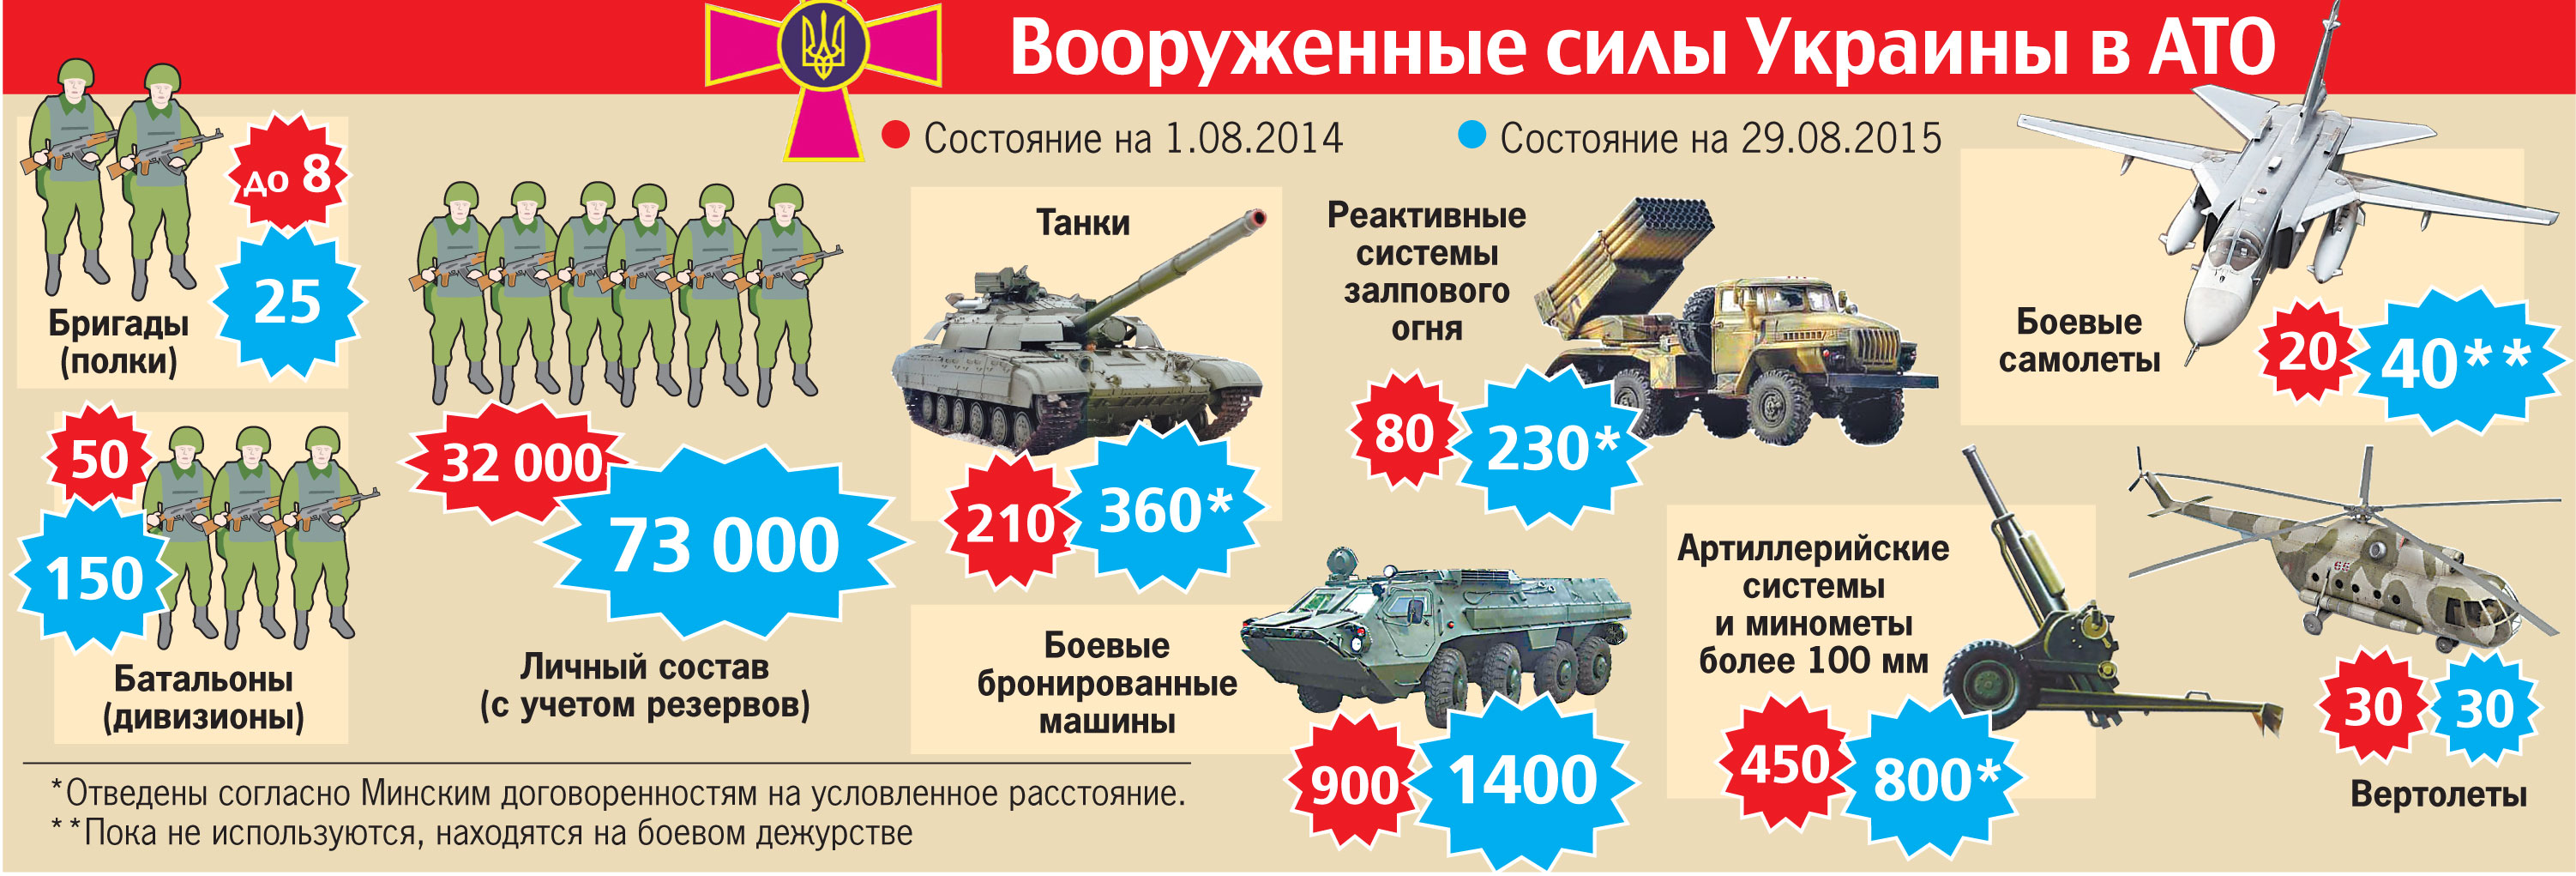 численность полка в российской армии 2020